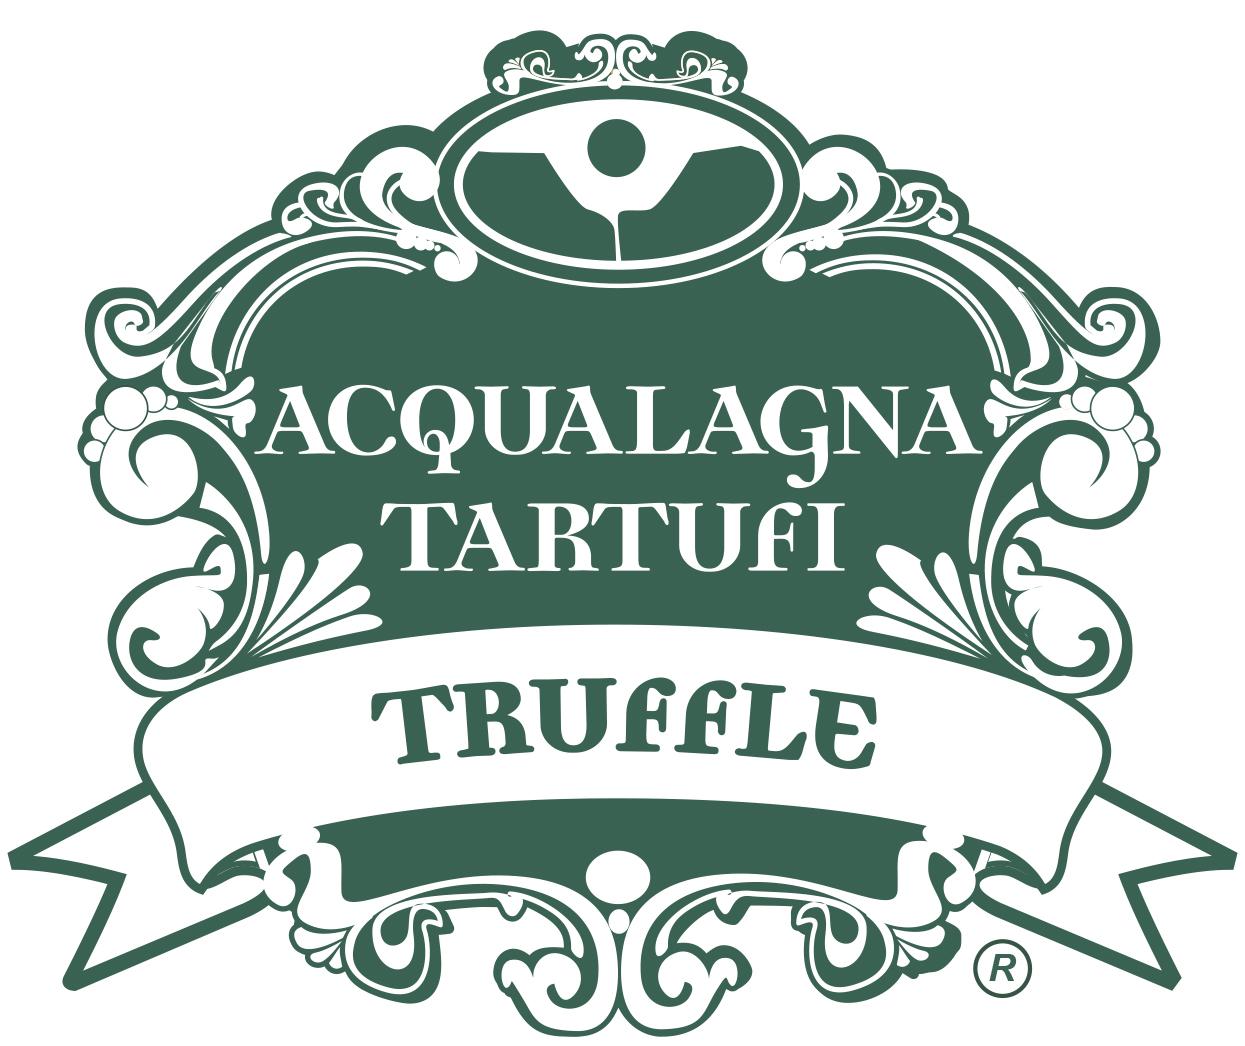 Acqualagna tartufi